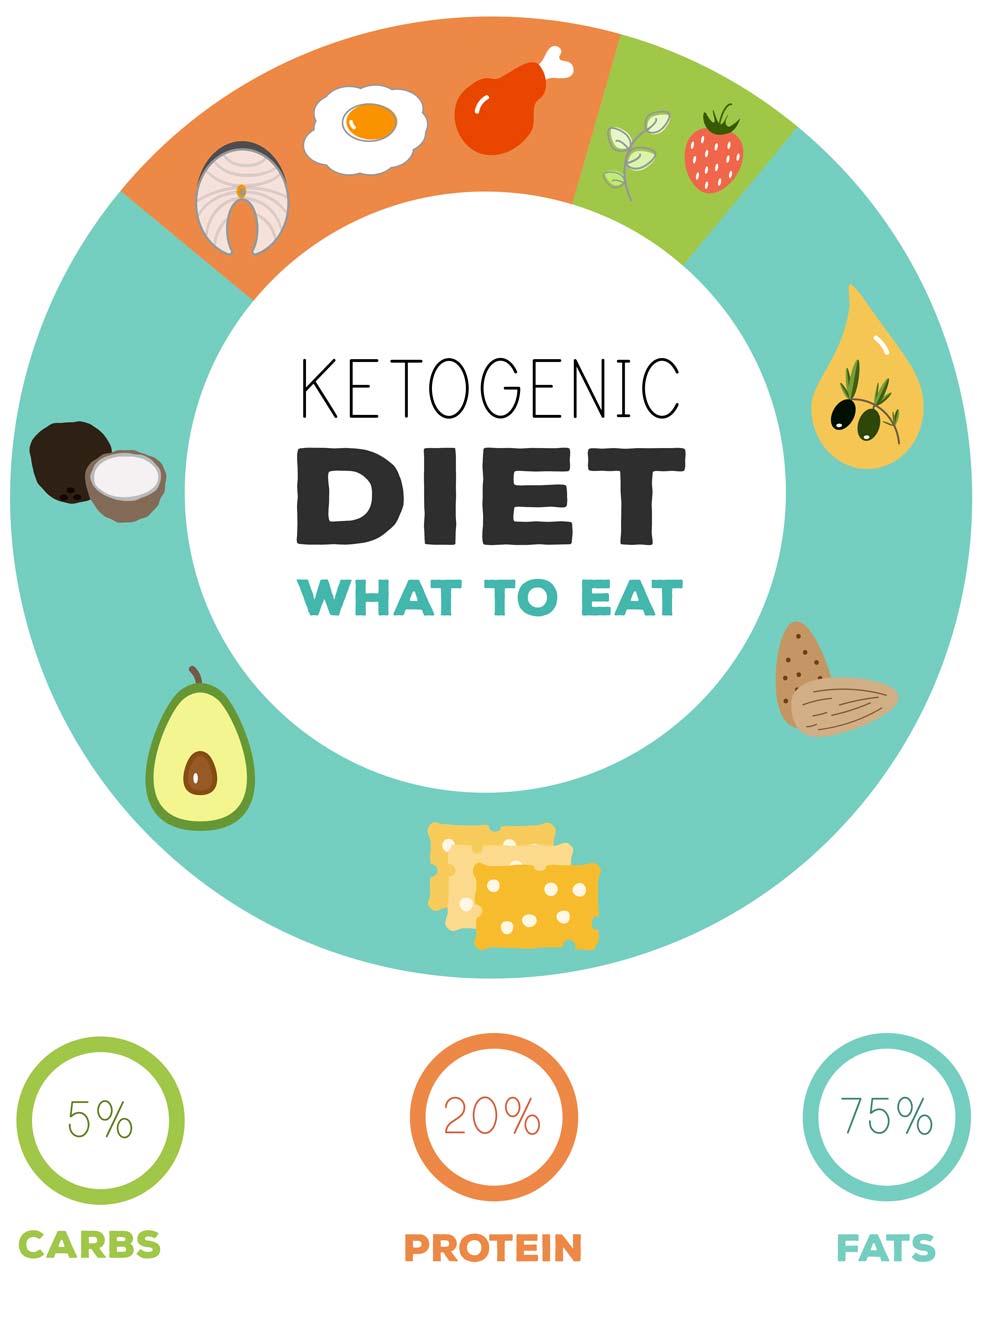 what to eat on keto diet, keto diet explained, jenna jameson on keto diet, keto diet plan for beginners, keto diet snacks, vegetarian keto diet